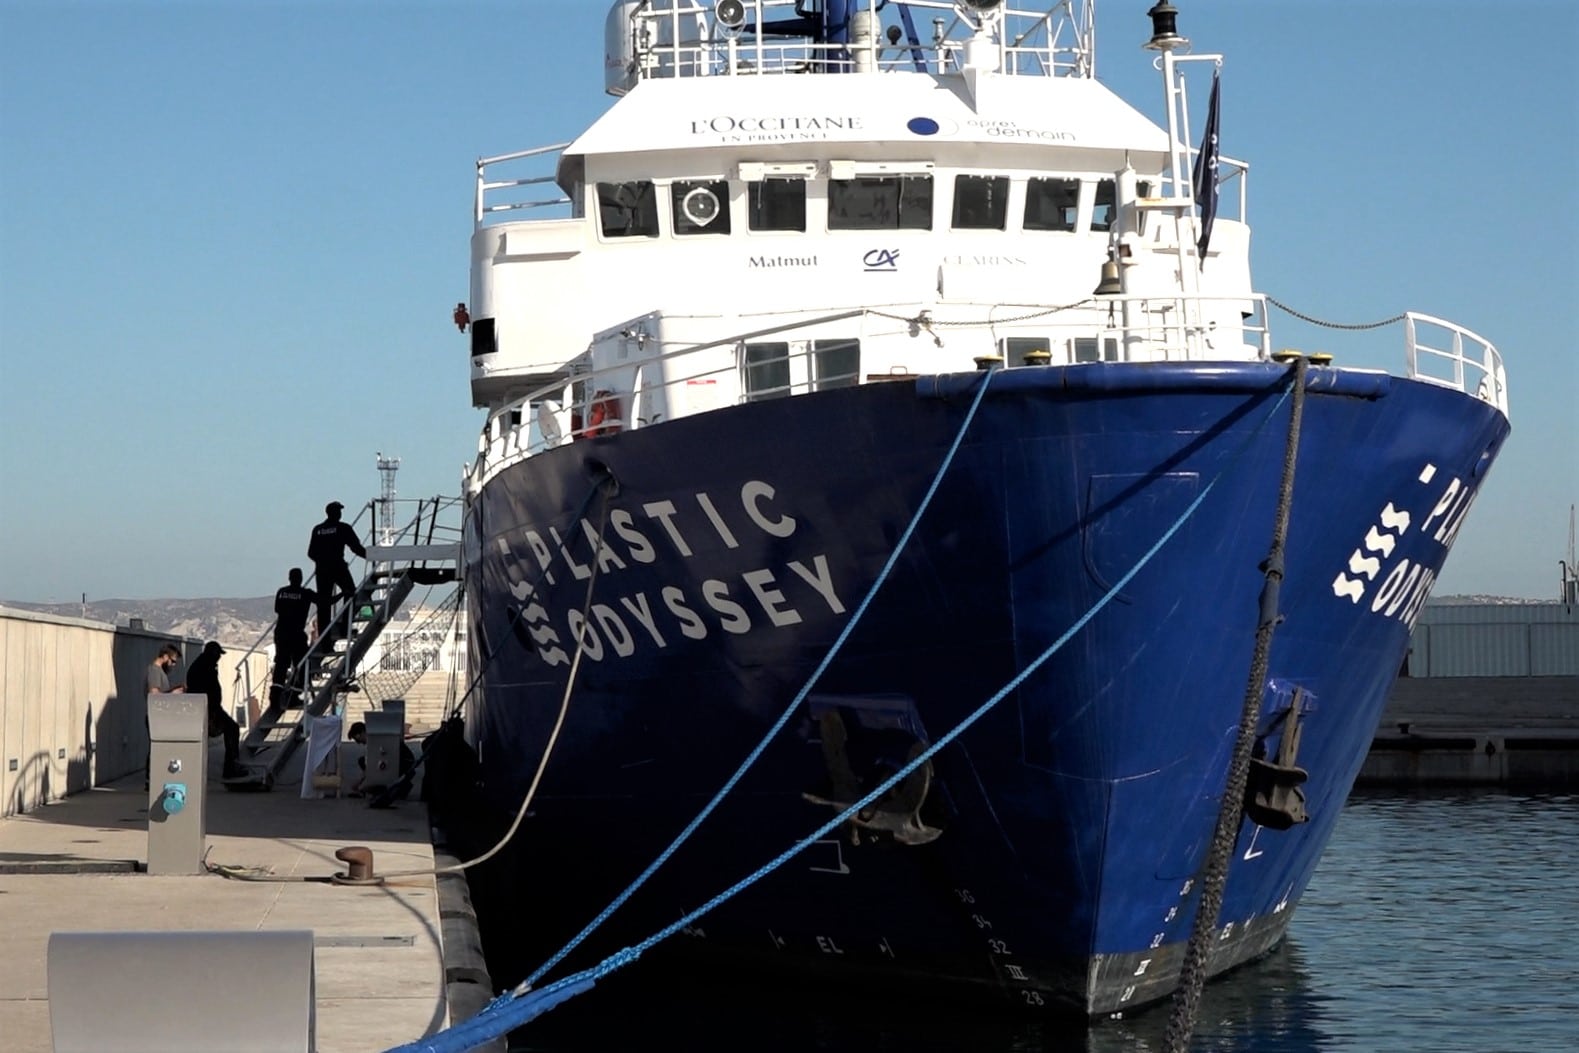 plastic odyssey, Vidéo | Plastic Odyssey en escale à Marseille avant son tour du monde contre le plastique, Made in Marseille